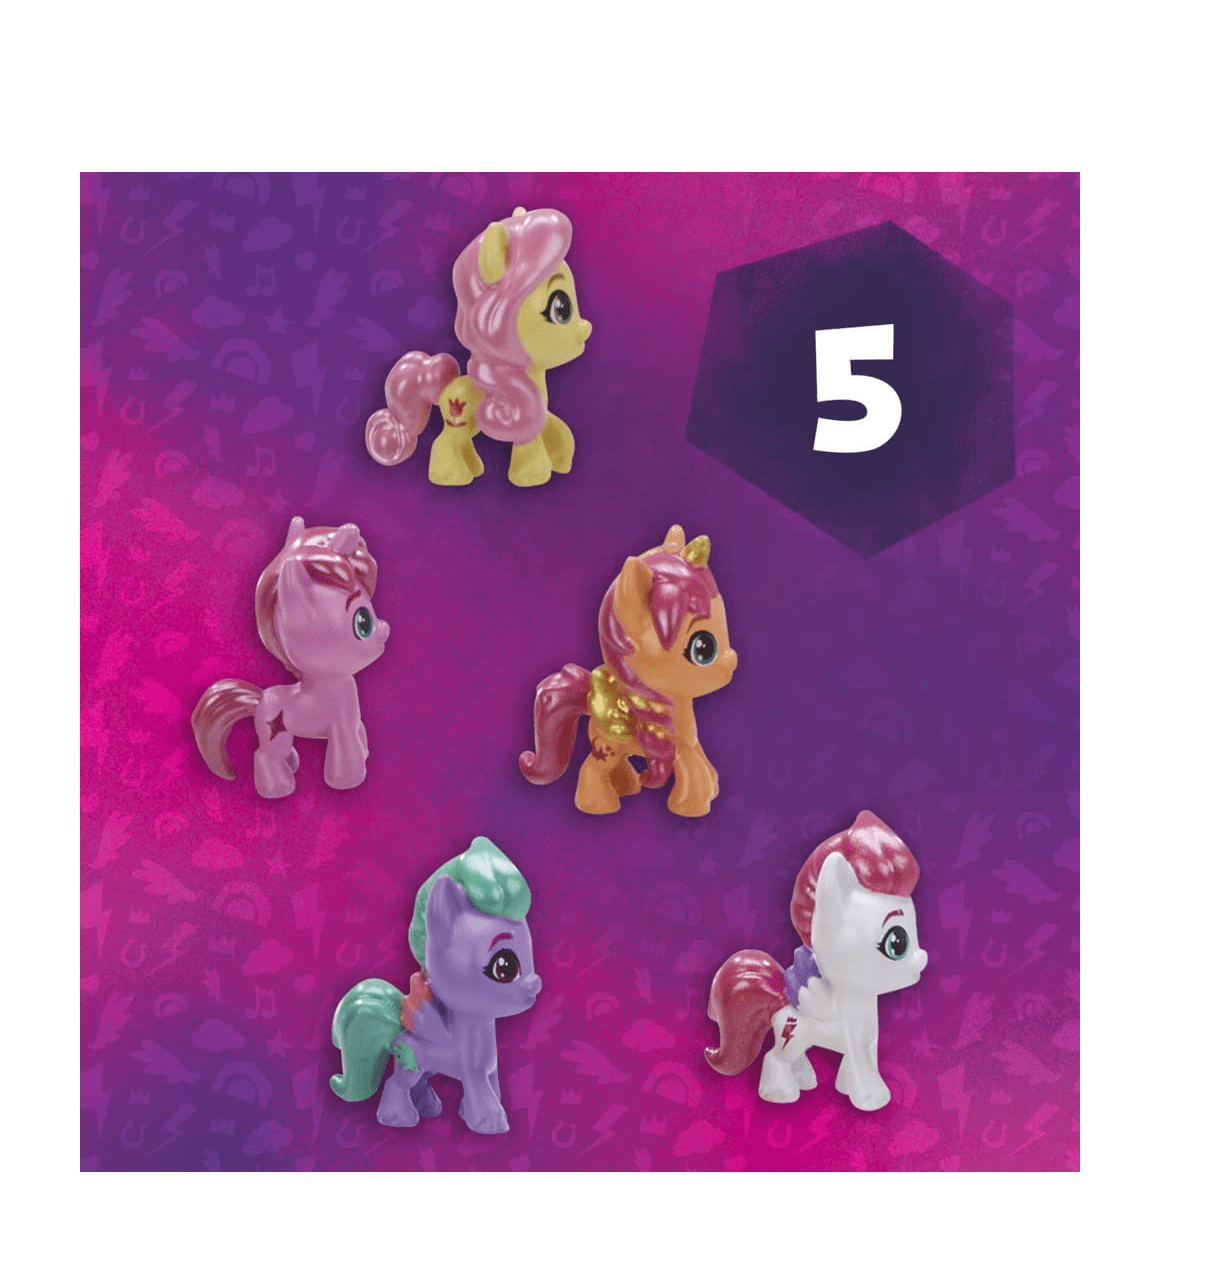 My Little Pony Mini World Magic Conheça o conjunto da coleção Minis com 22  figuras de pônei, brinquedo para crianças de 5 anos ou mais (exclusivo da  ) em Promoção na Americanas